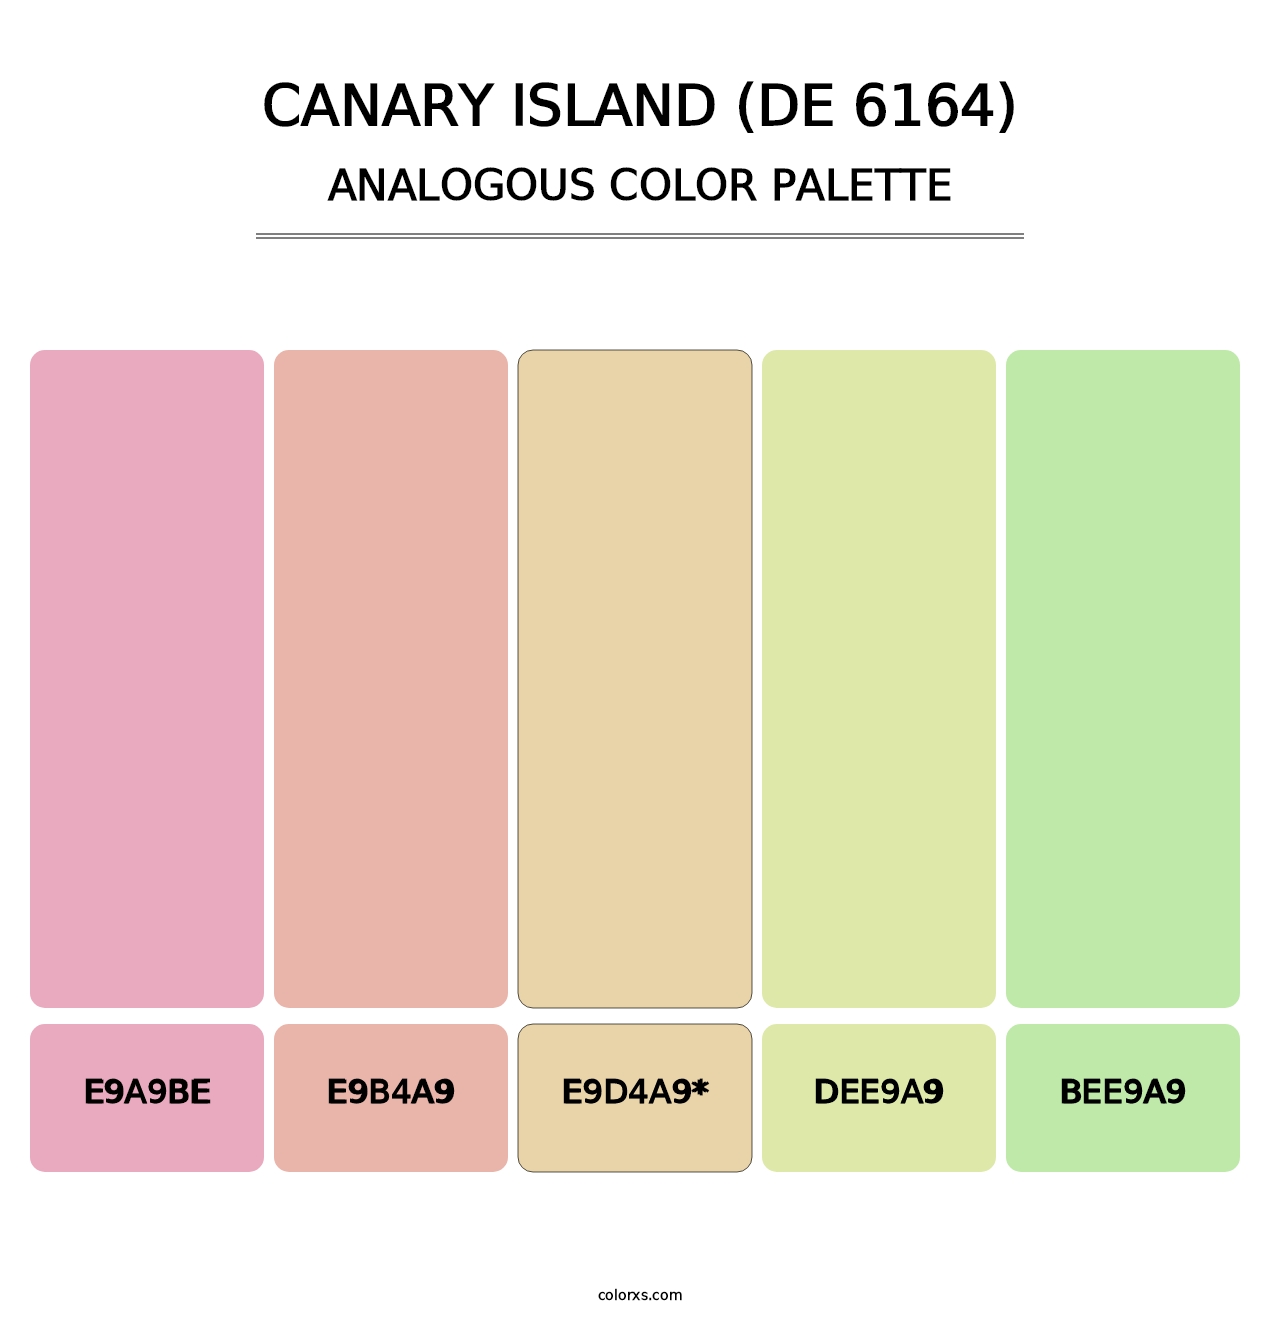 Canary Island (DE 6164) - Analogous Color Palette